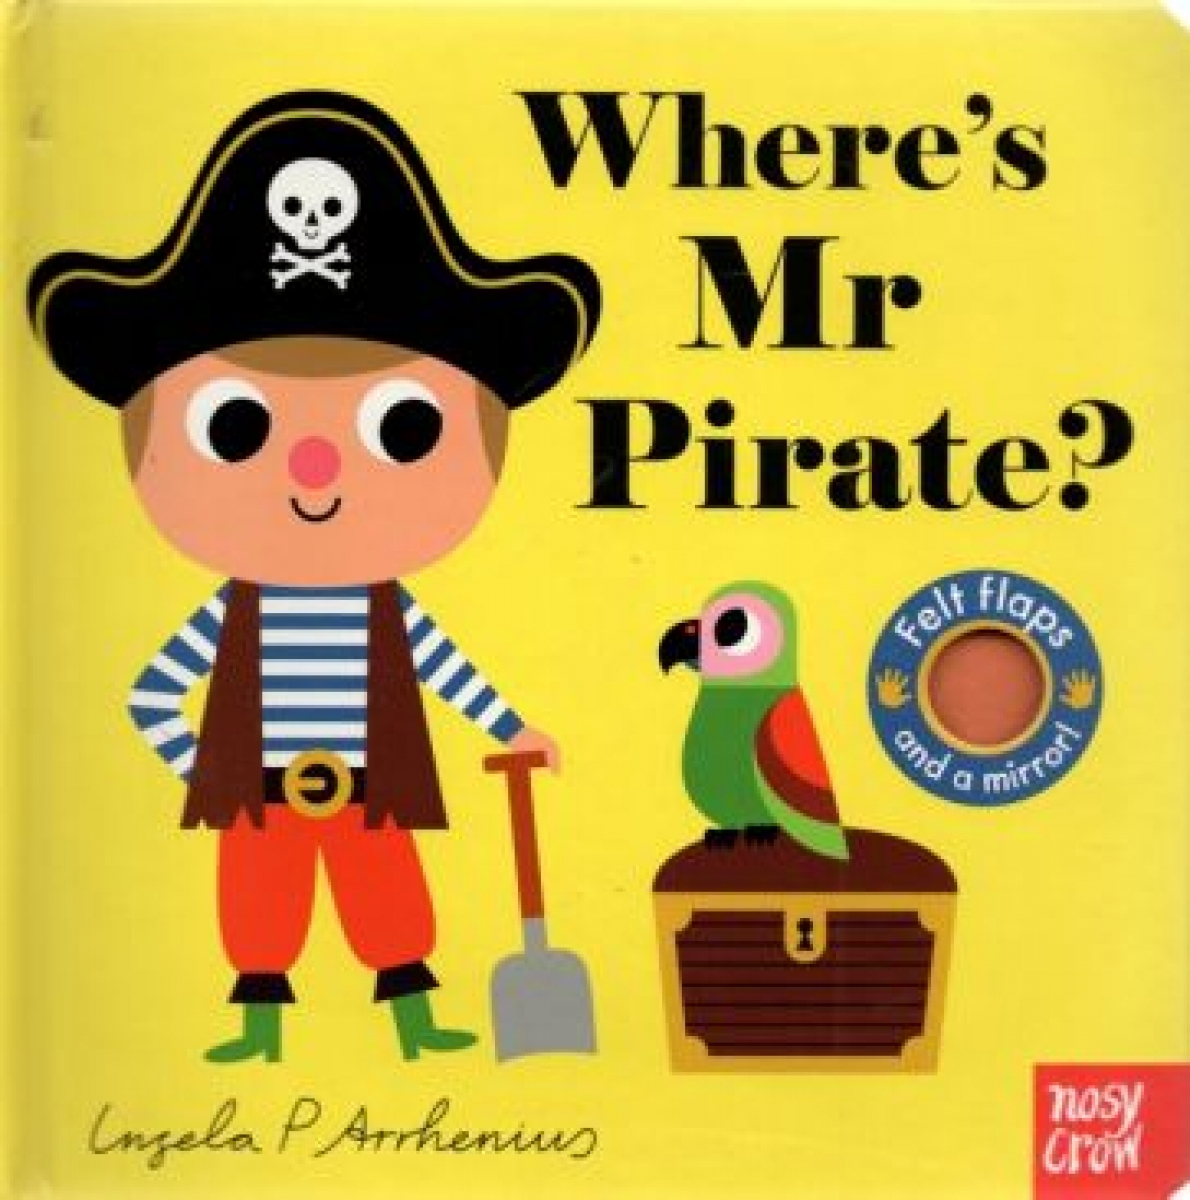 Arrhenius Ingela P. Where's Mr Pirate? 